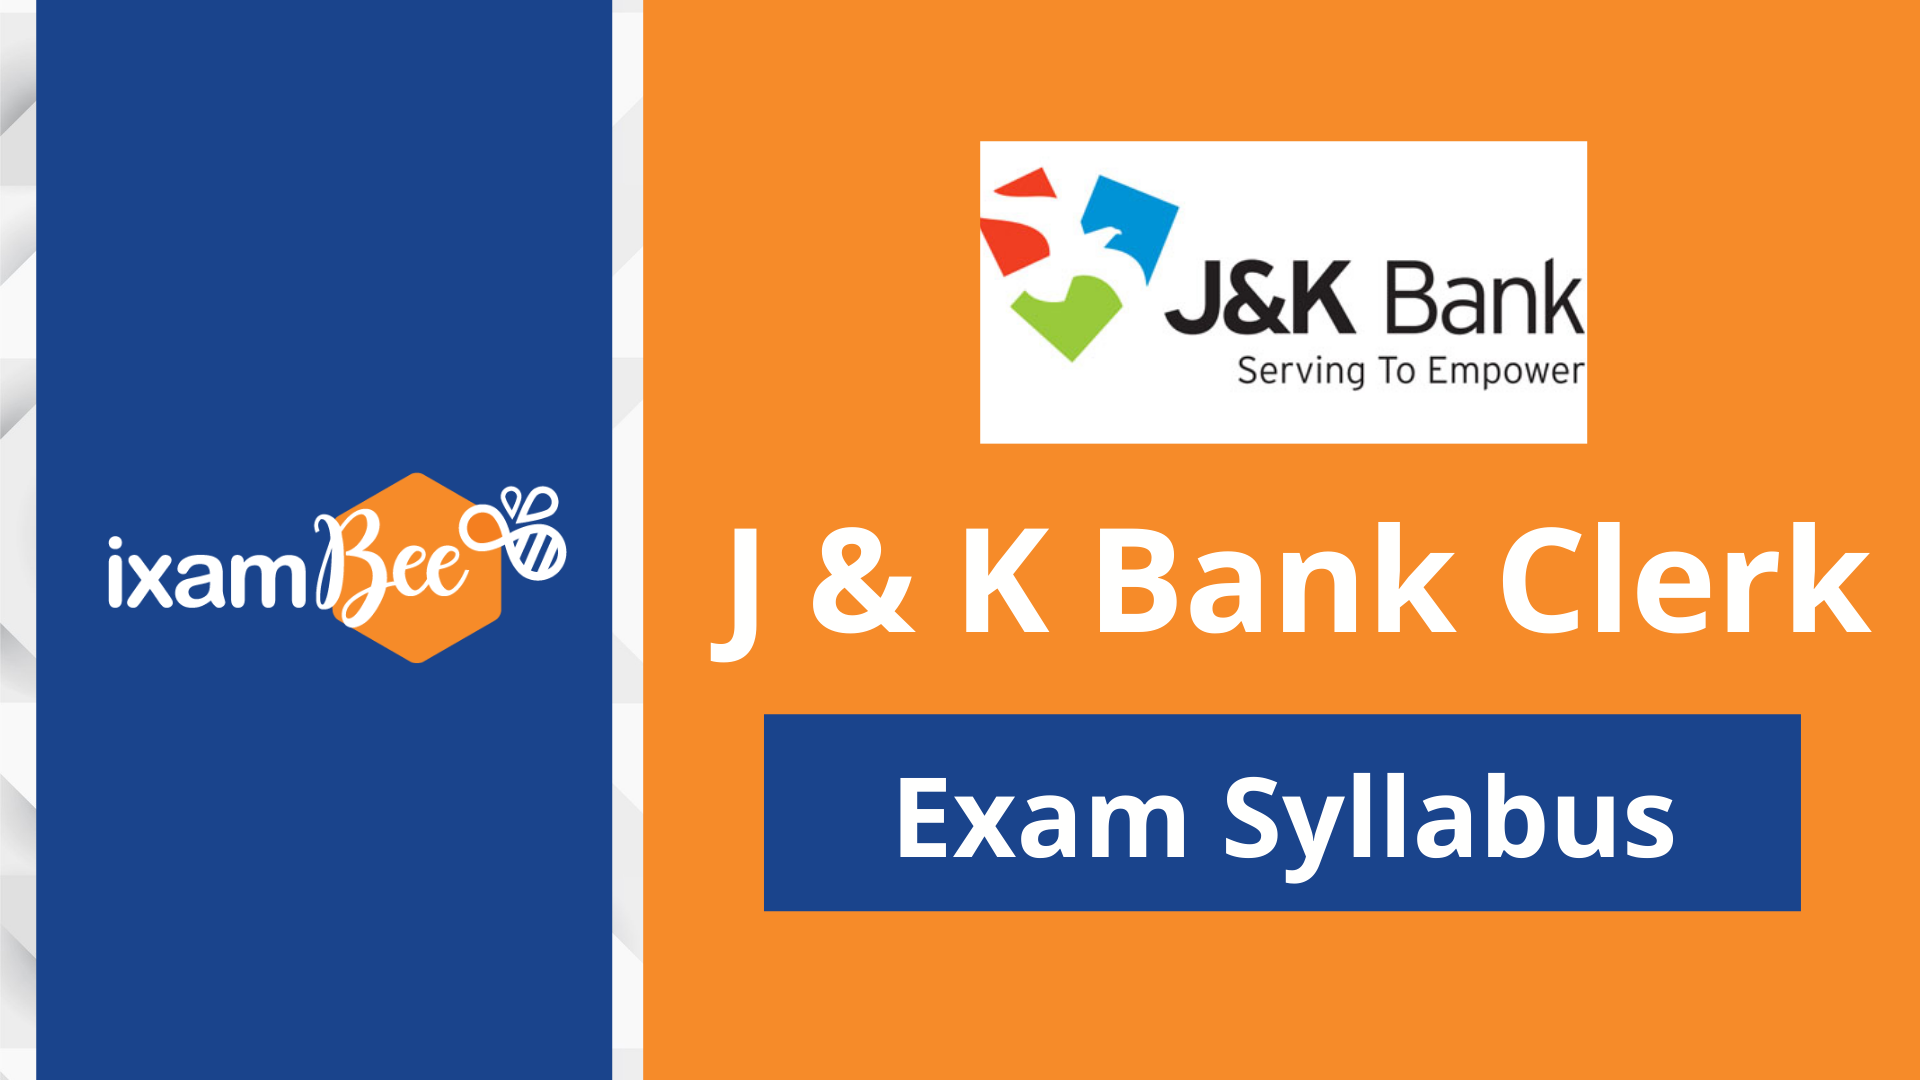 J&K Bank Clerk Exam Syllabus